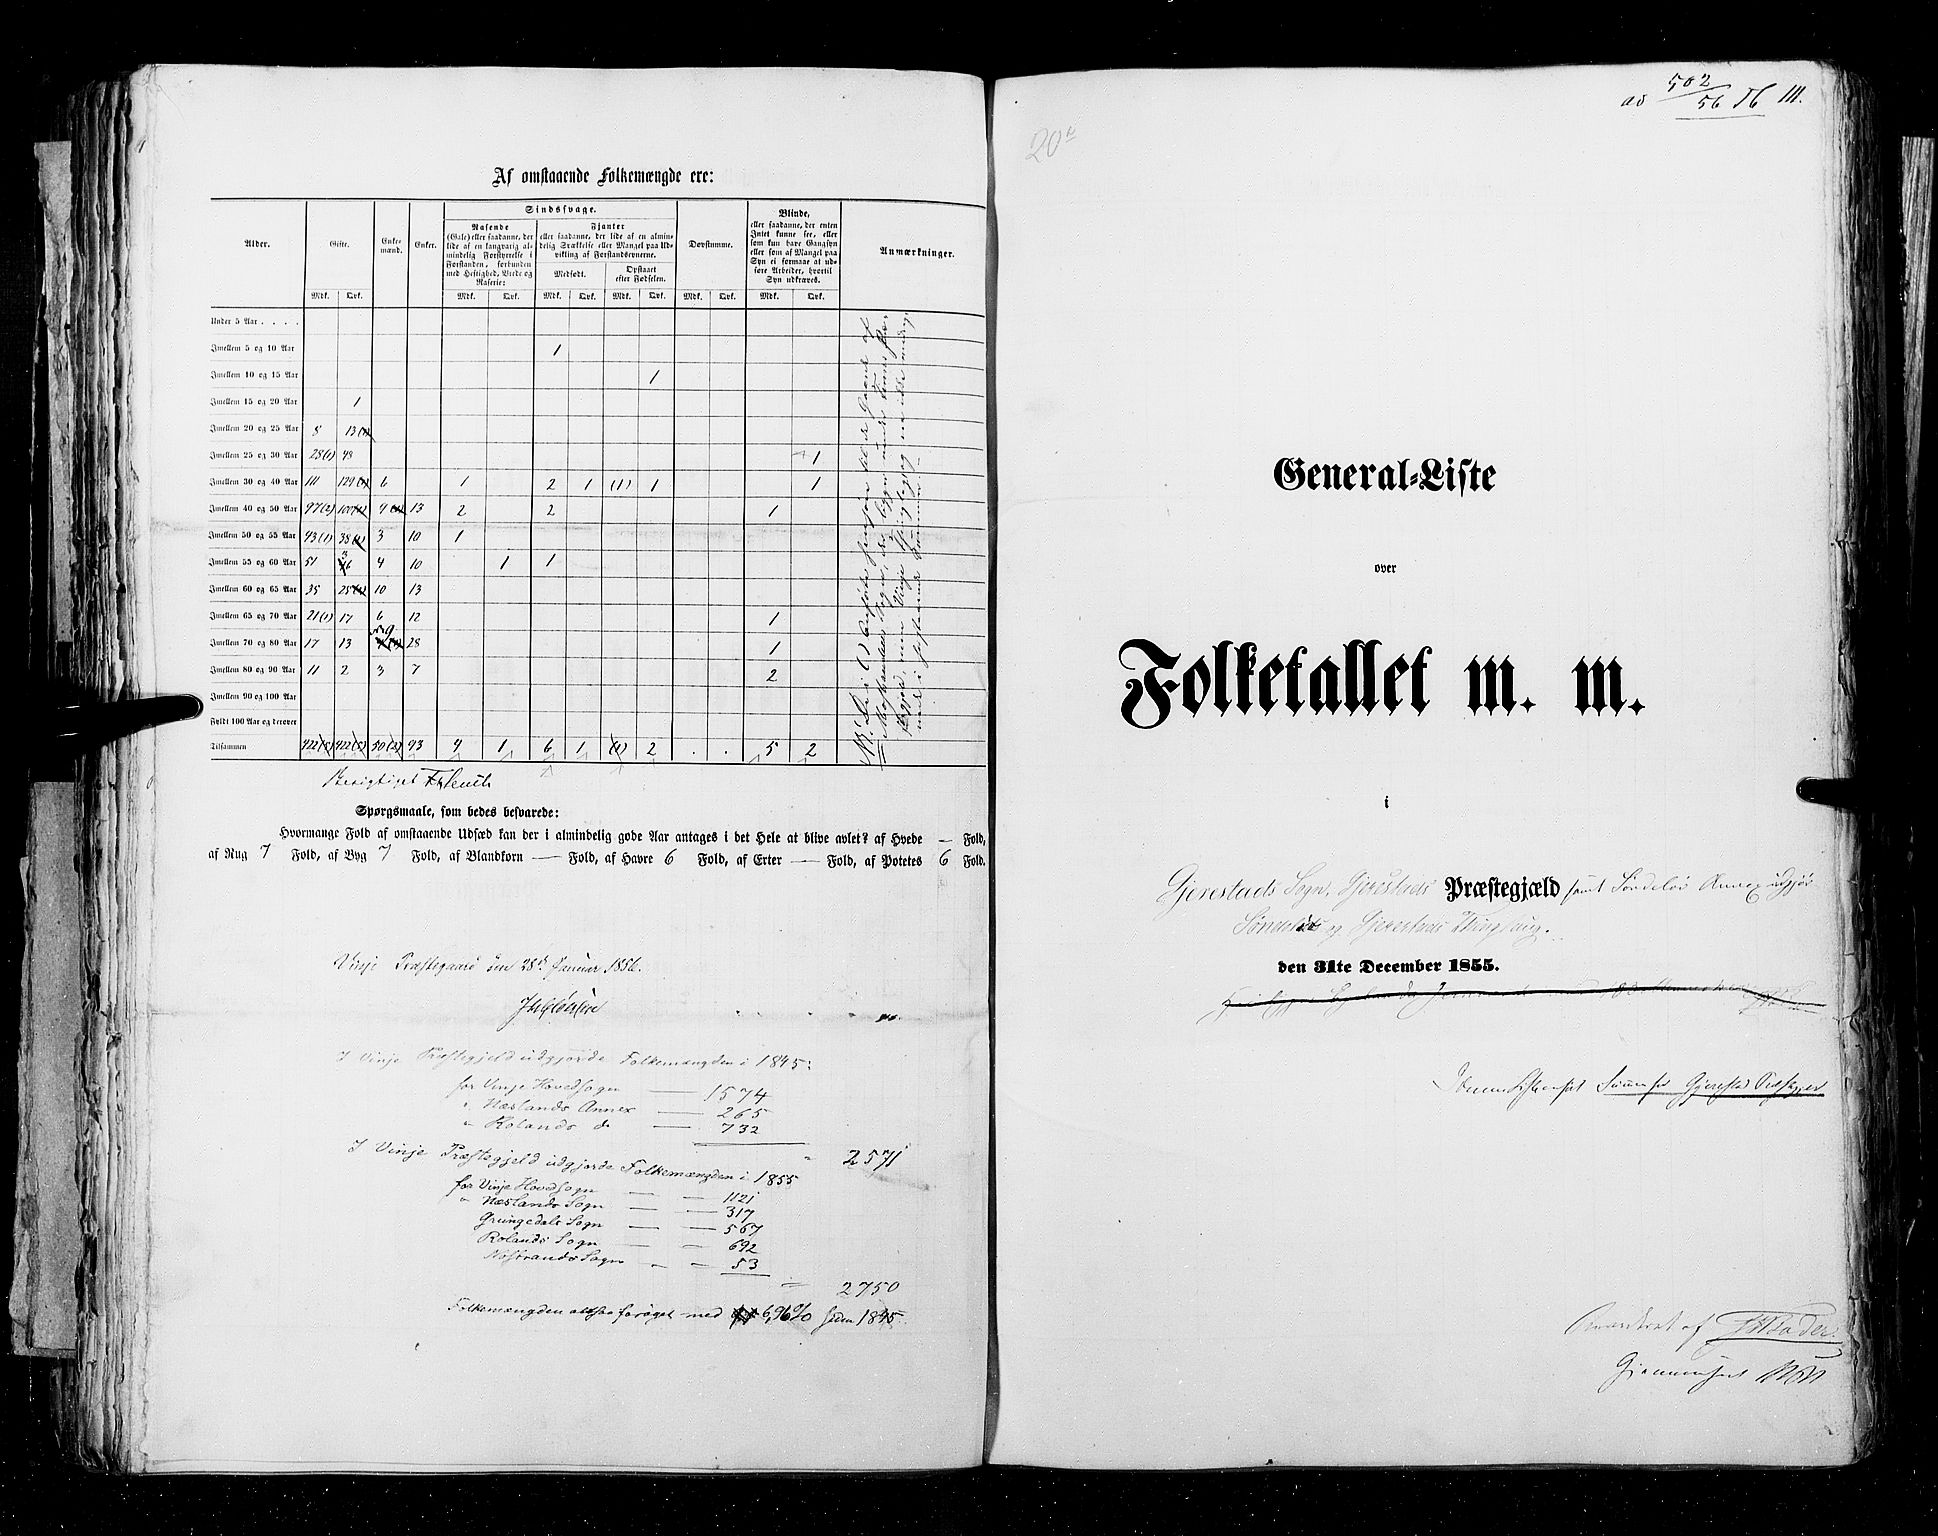 RA, Folketellingen 1855, bind 3: Bratsberg amt, Nedenes amt og Lister og Mandal amt, 1855, s. 111